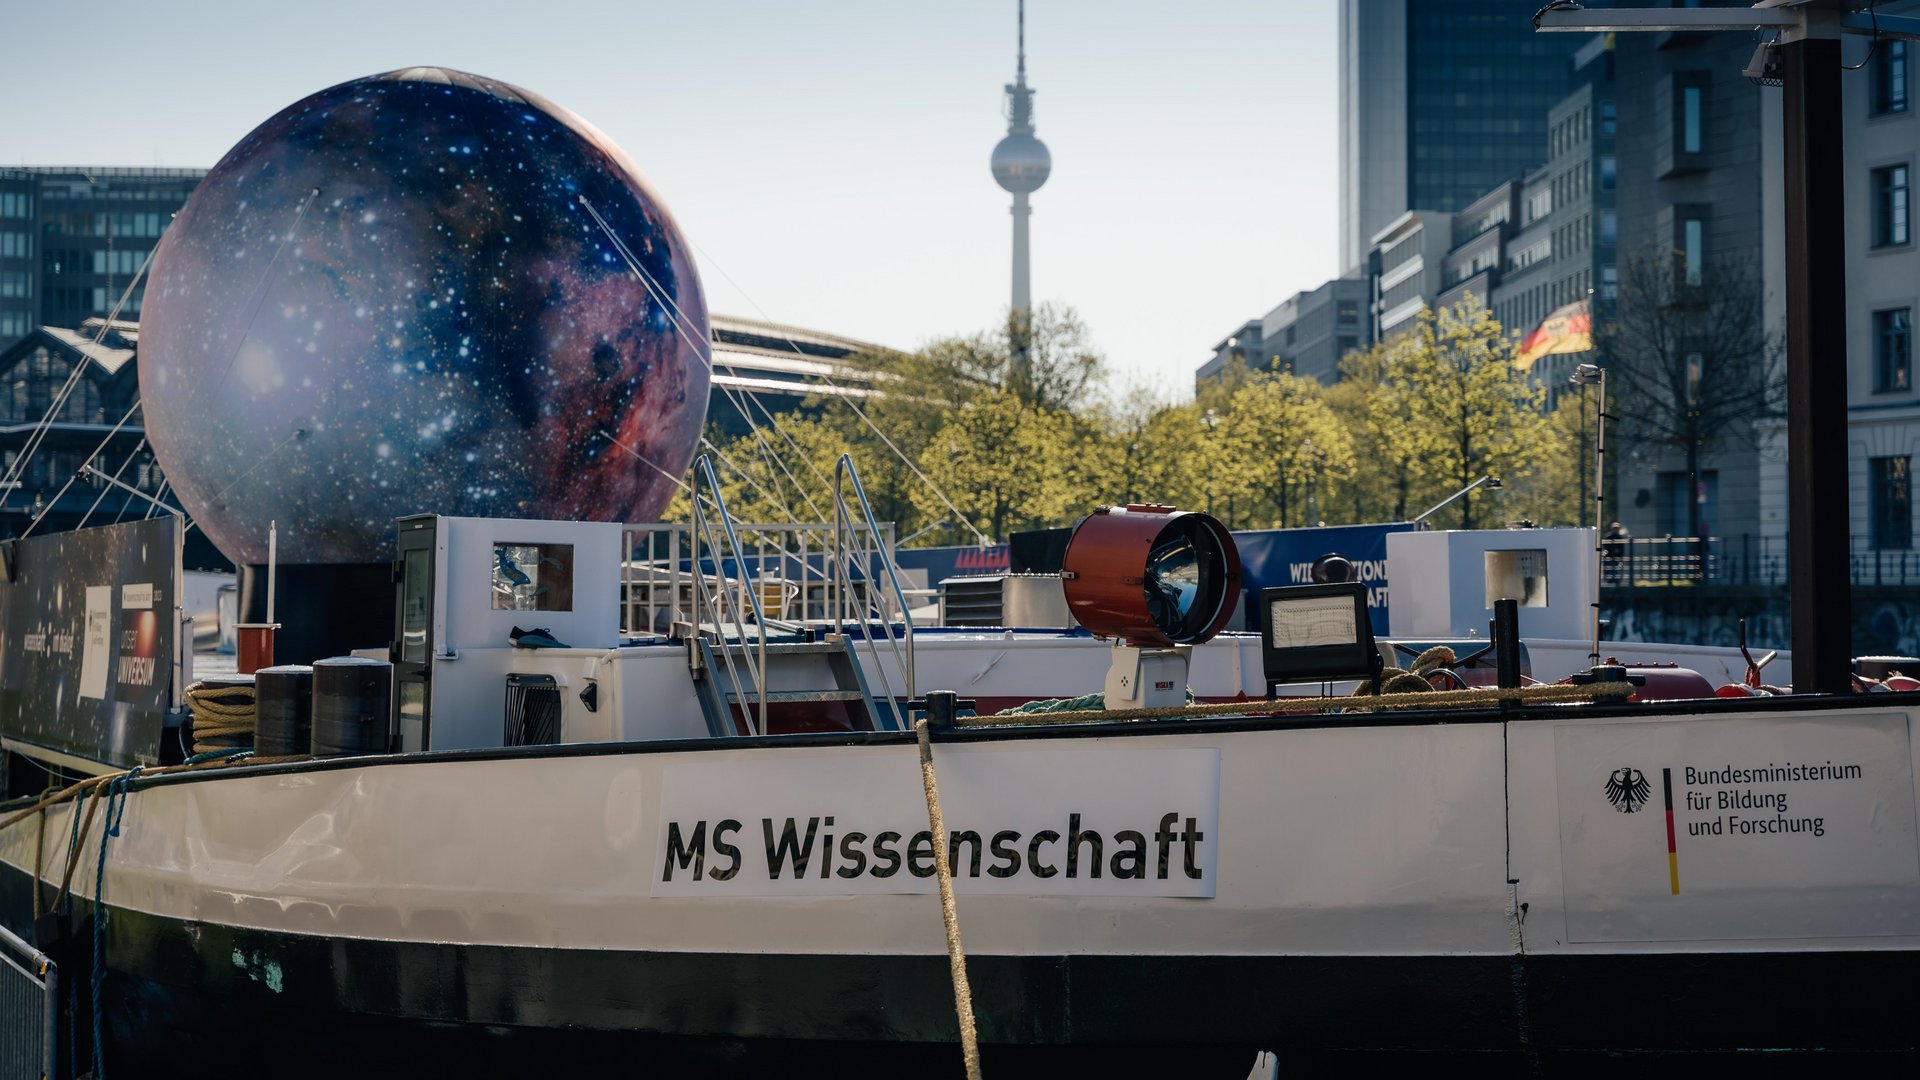 Projektbild MS Wissenschaft: Foto eines Frachtschiffes, an der Reling steht "MS Wissenschaft" An Deck ist eine große Attrappe des Mondes mit Seilen befestigt.